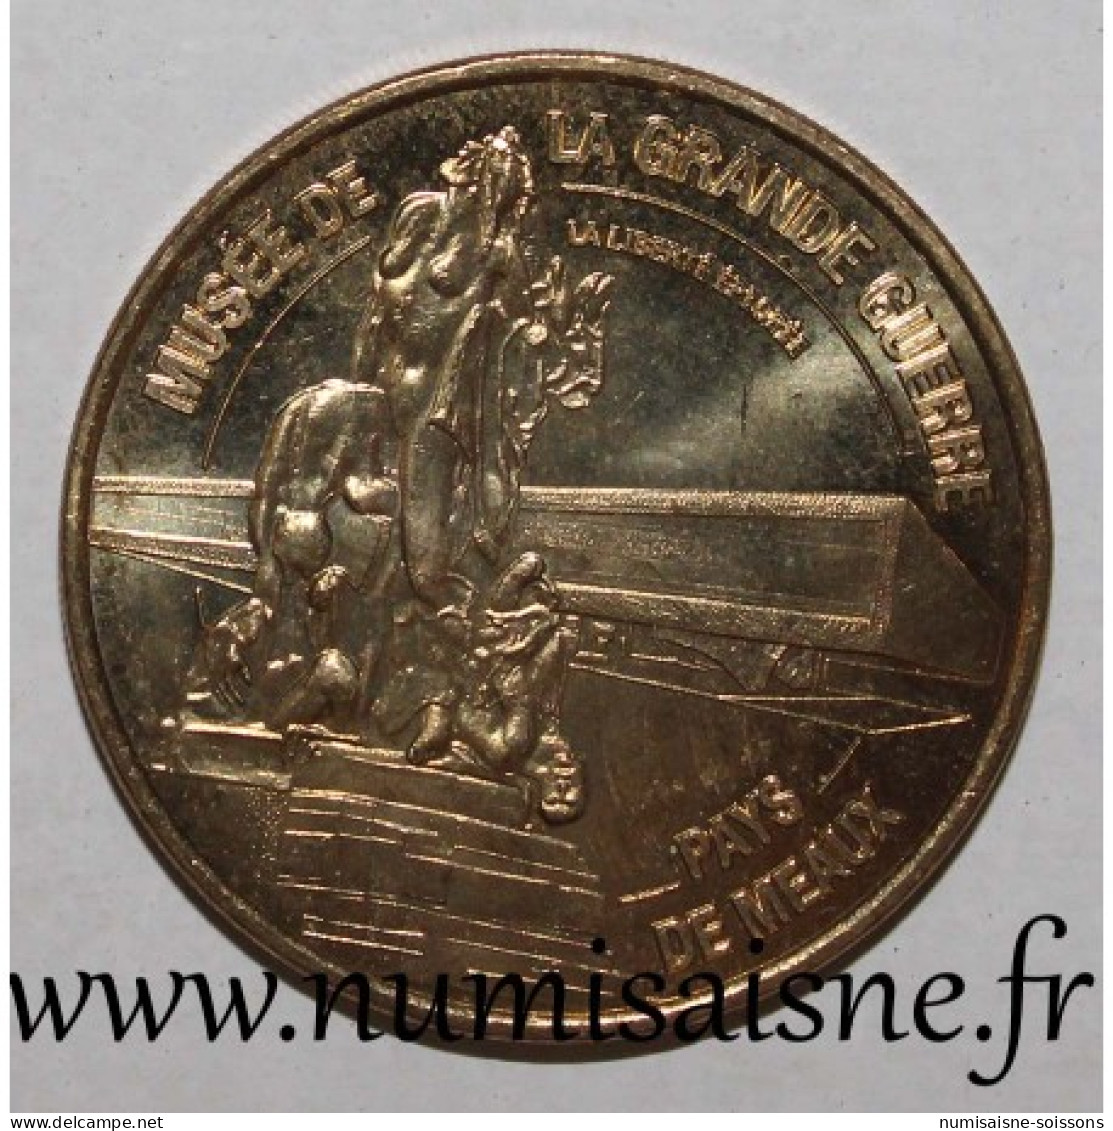 77 - MEAUX - MUSÉE DE LA GRANDE GUERRE - 1914 - 1918 - Monnaie De Paris - 2012 - 2012